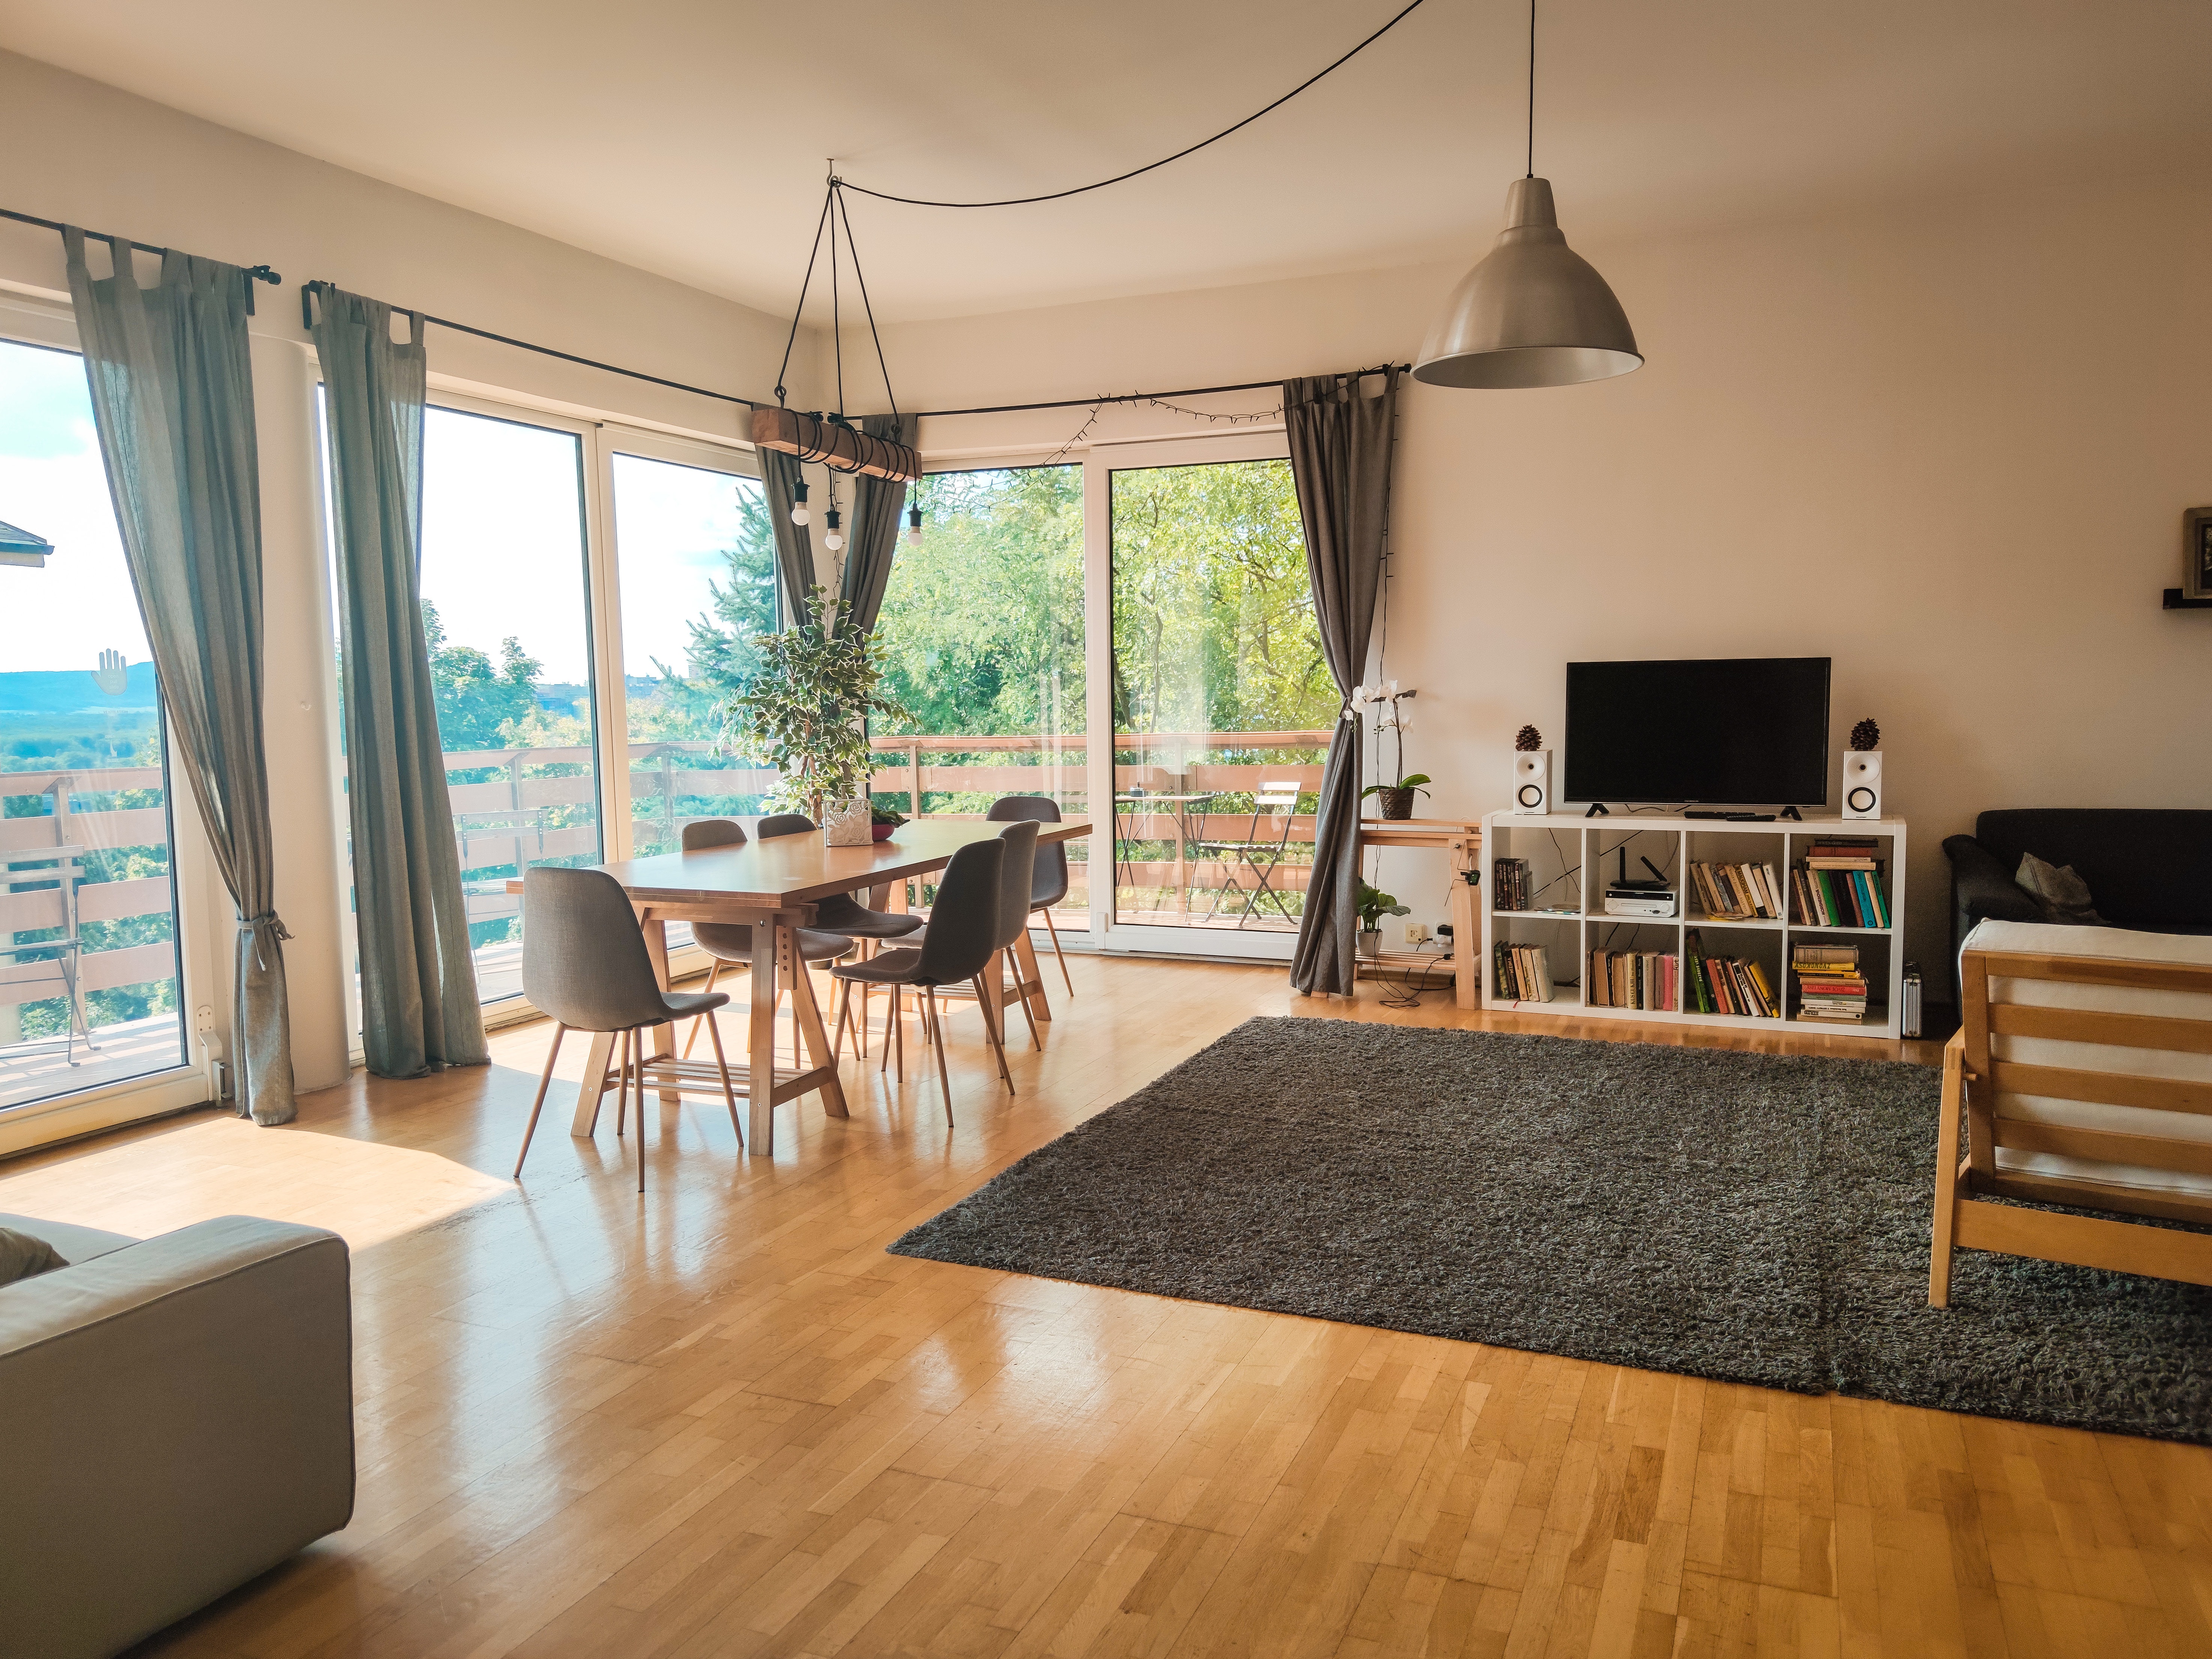 Inwestowanie w mieszkania na wynajem w Warszawie – kluczowe aspekty przy zakupie